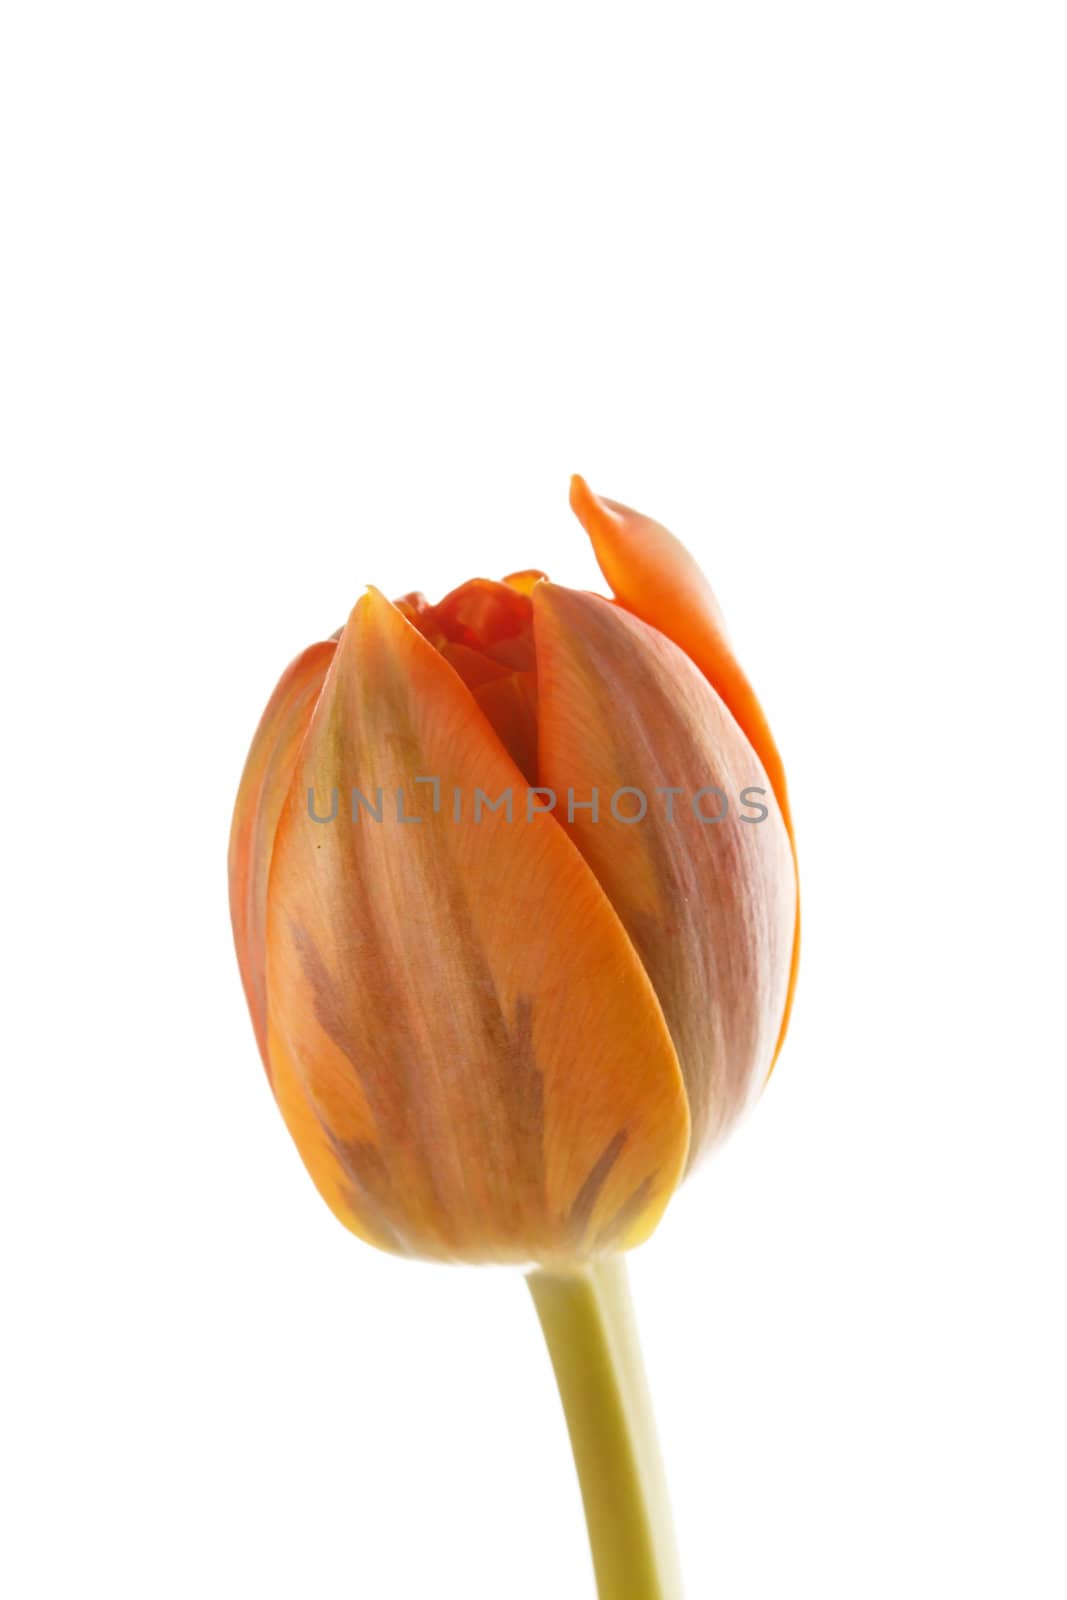 nice tulip